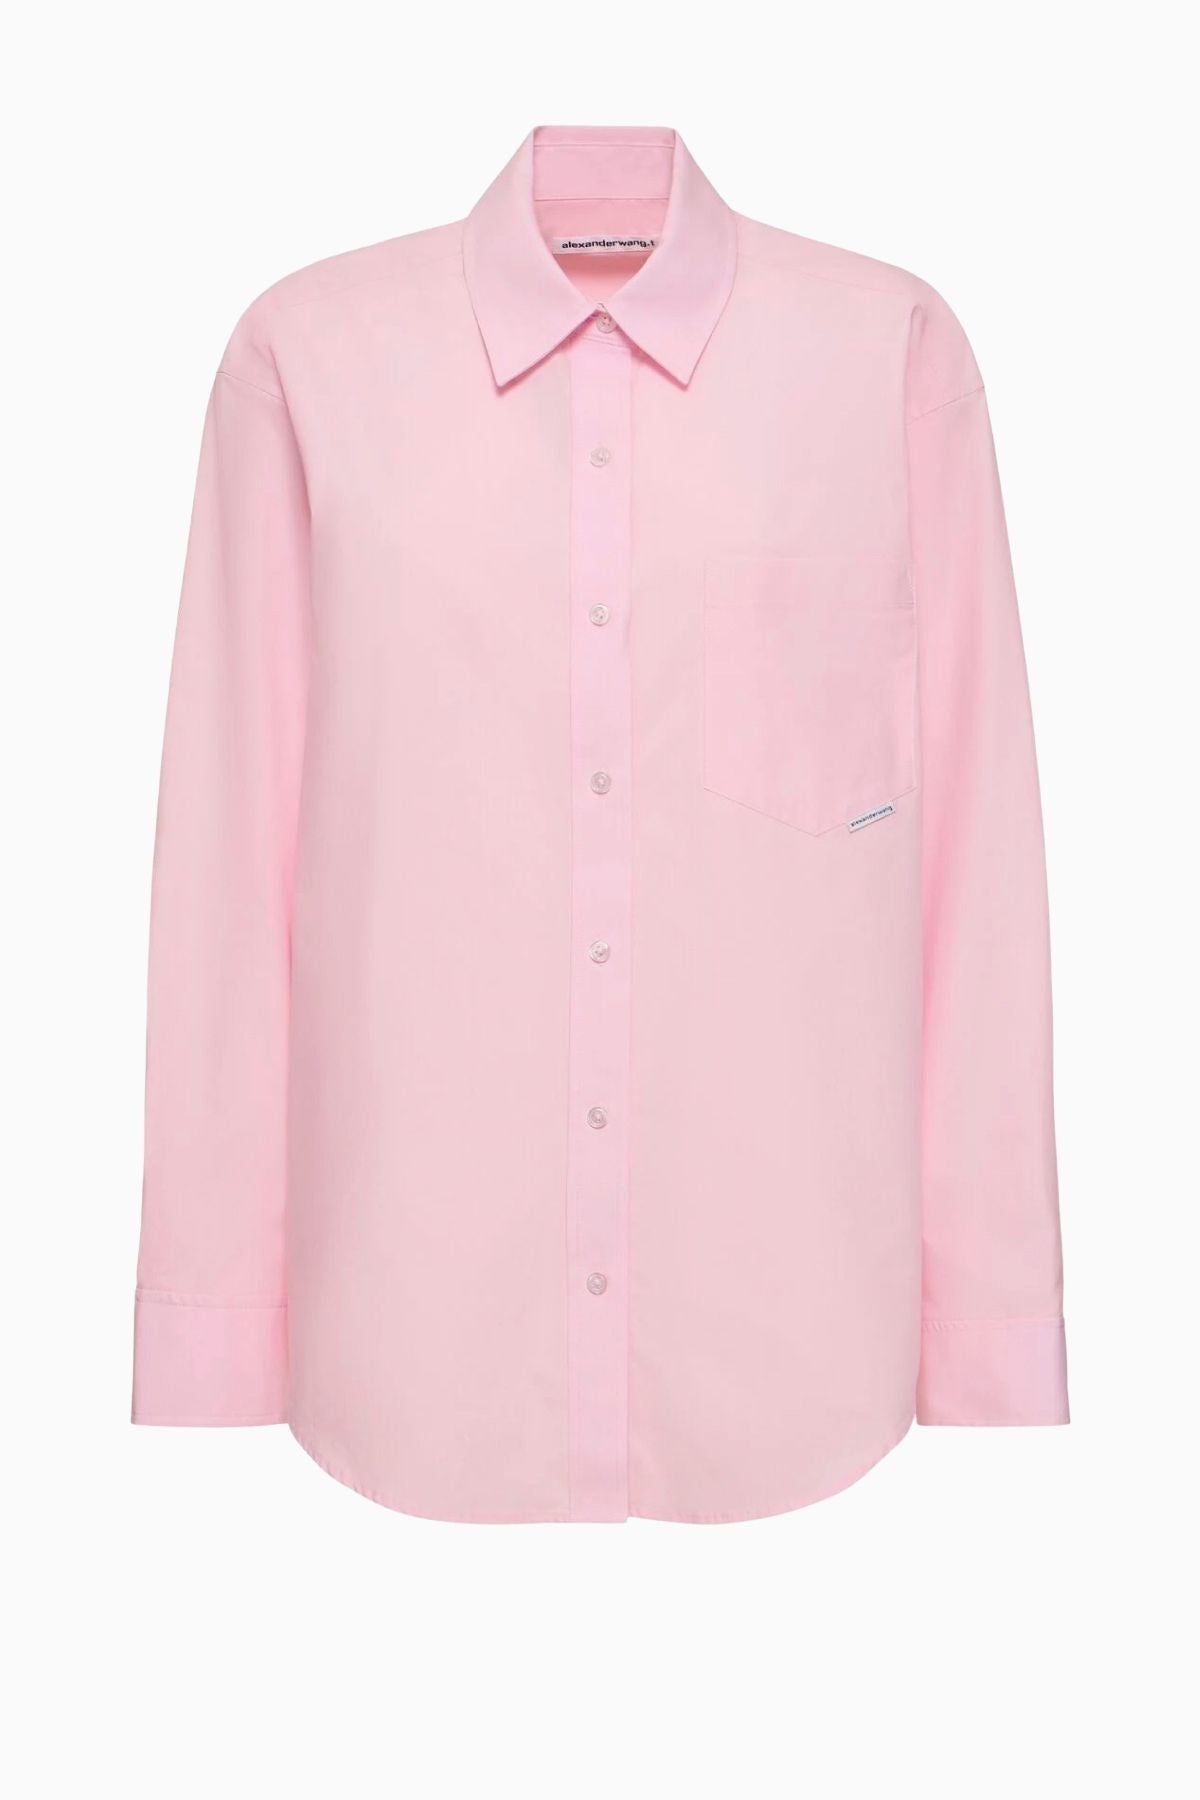 Alexanderwang.t Boyfriend Shirt - Light Pink